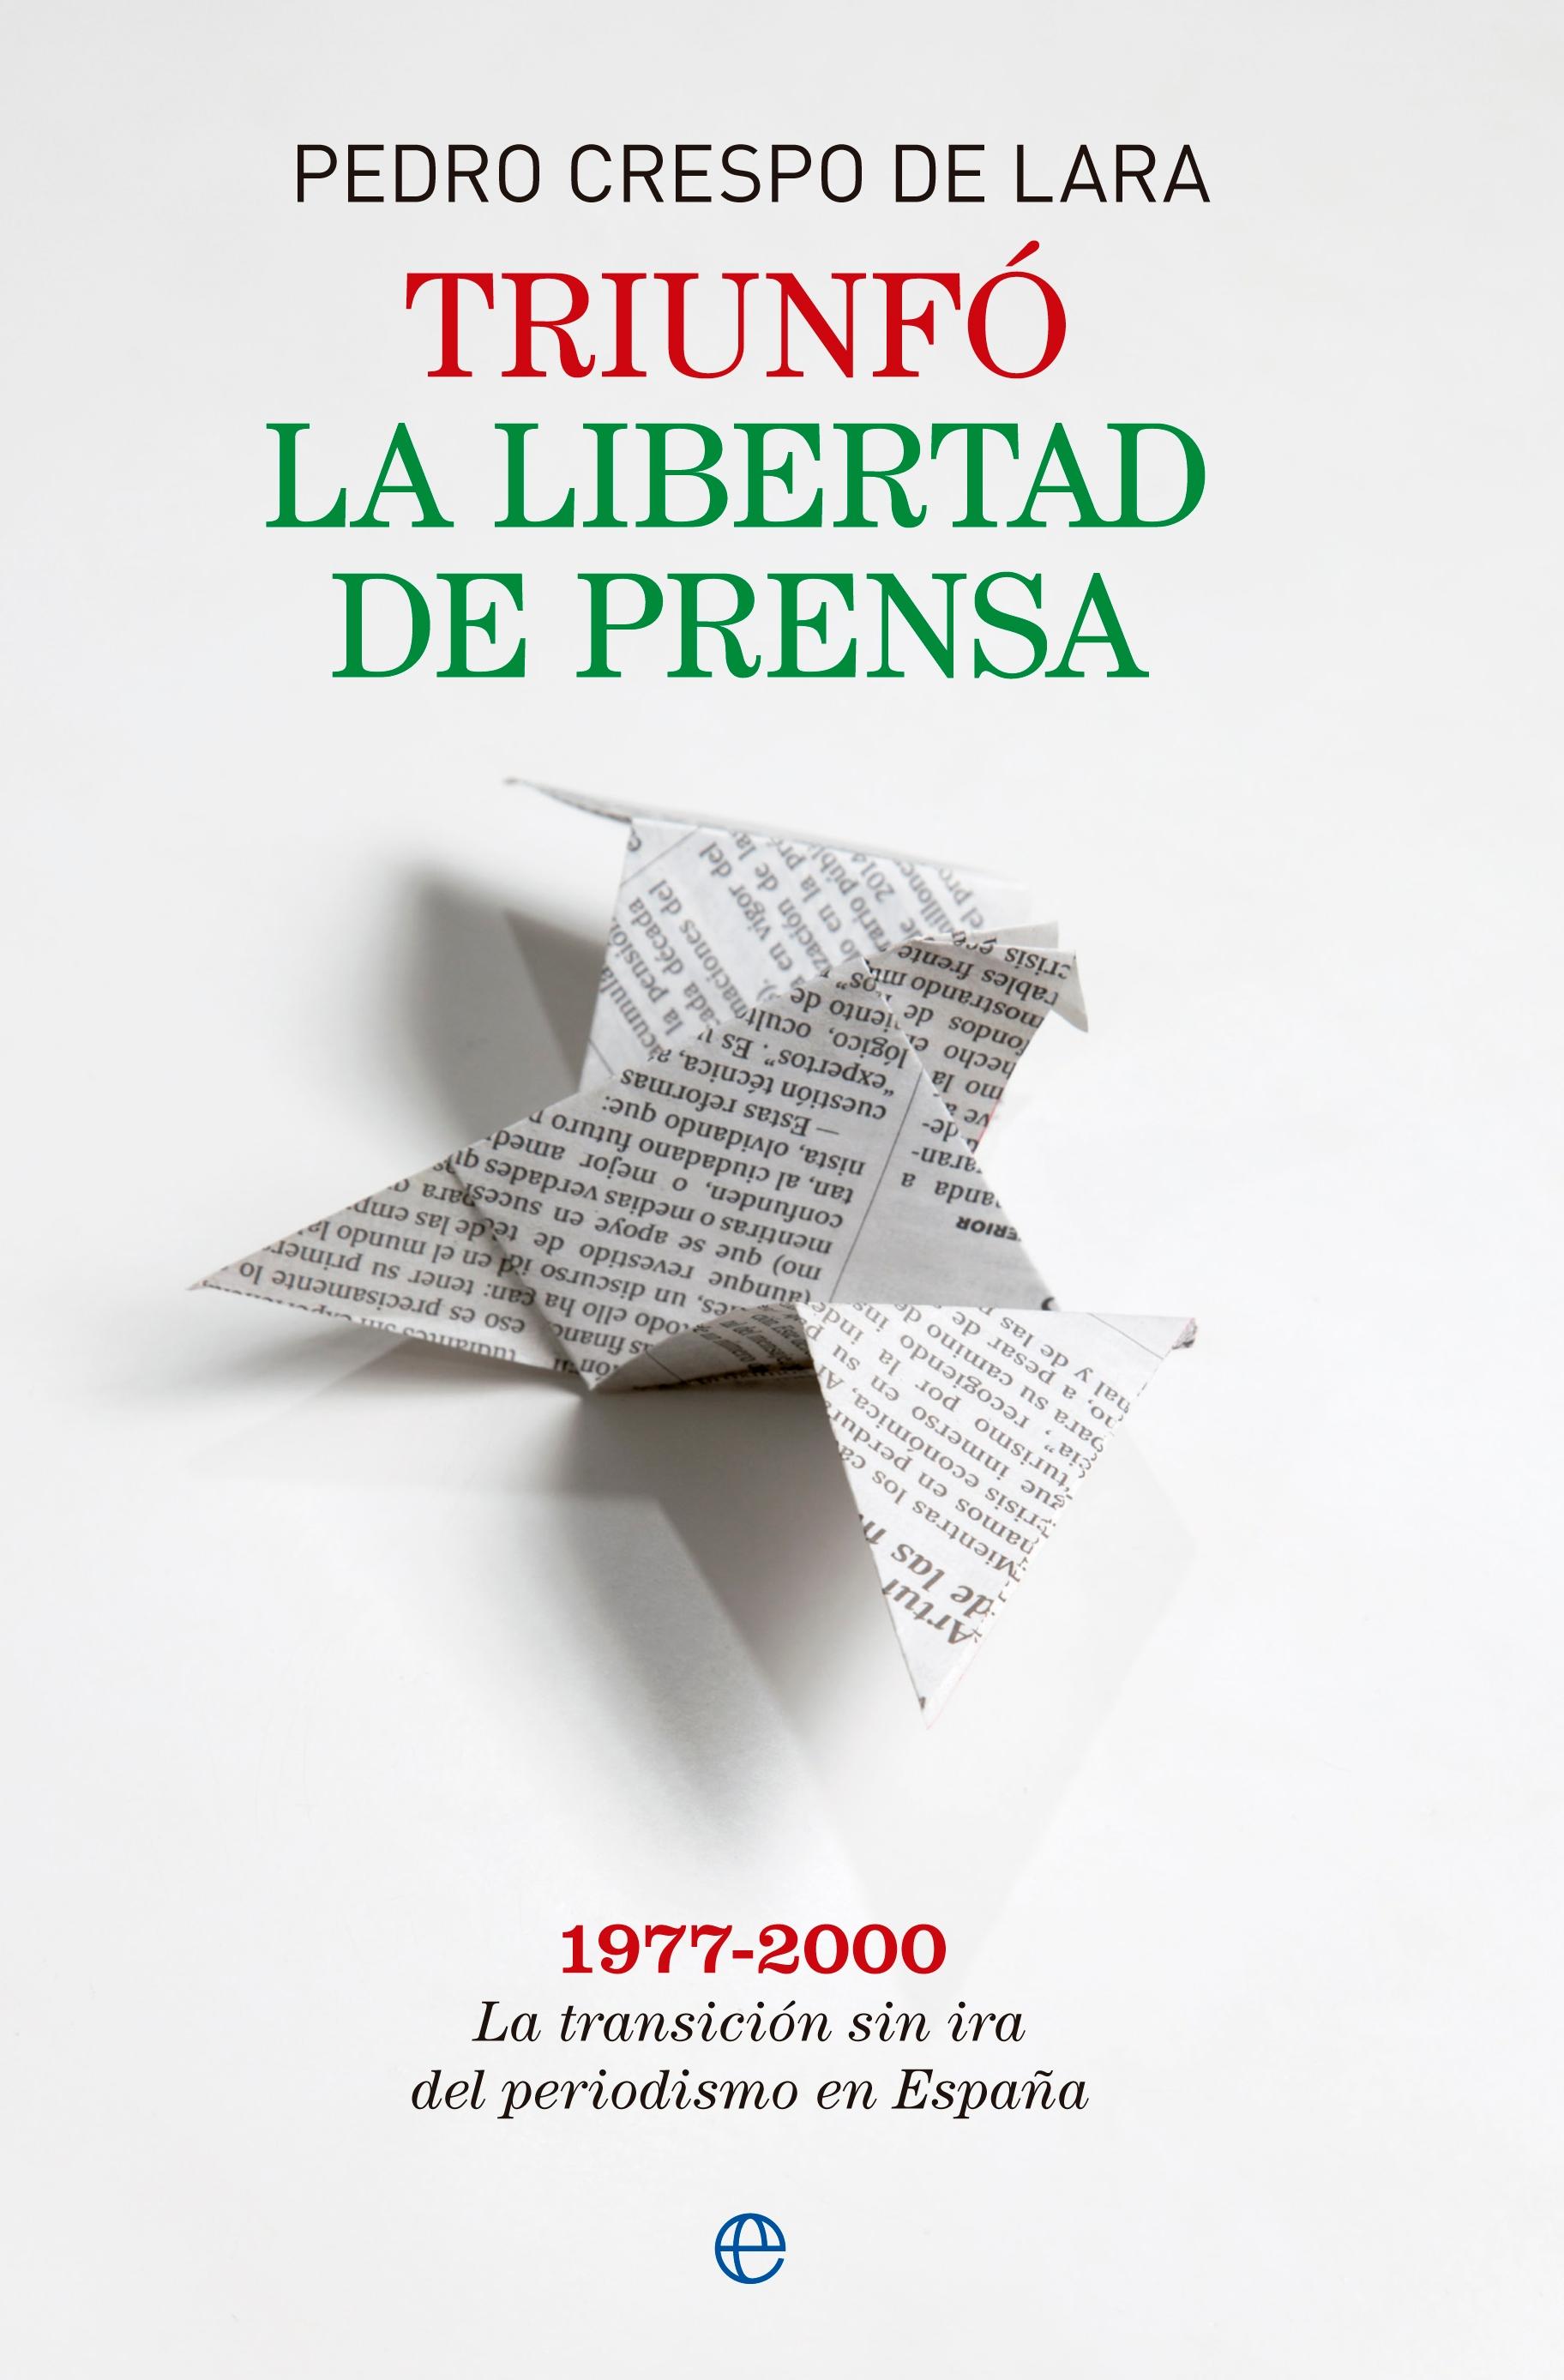 Triunfó la libertad de prensa "La transición sin ira del periodismo de España 1977 - 2000"